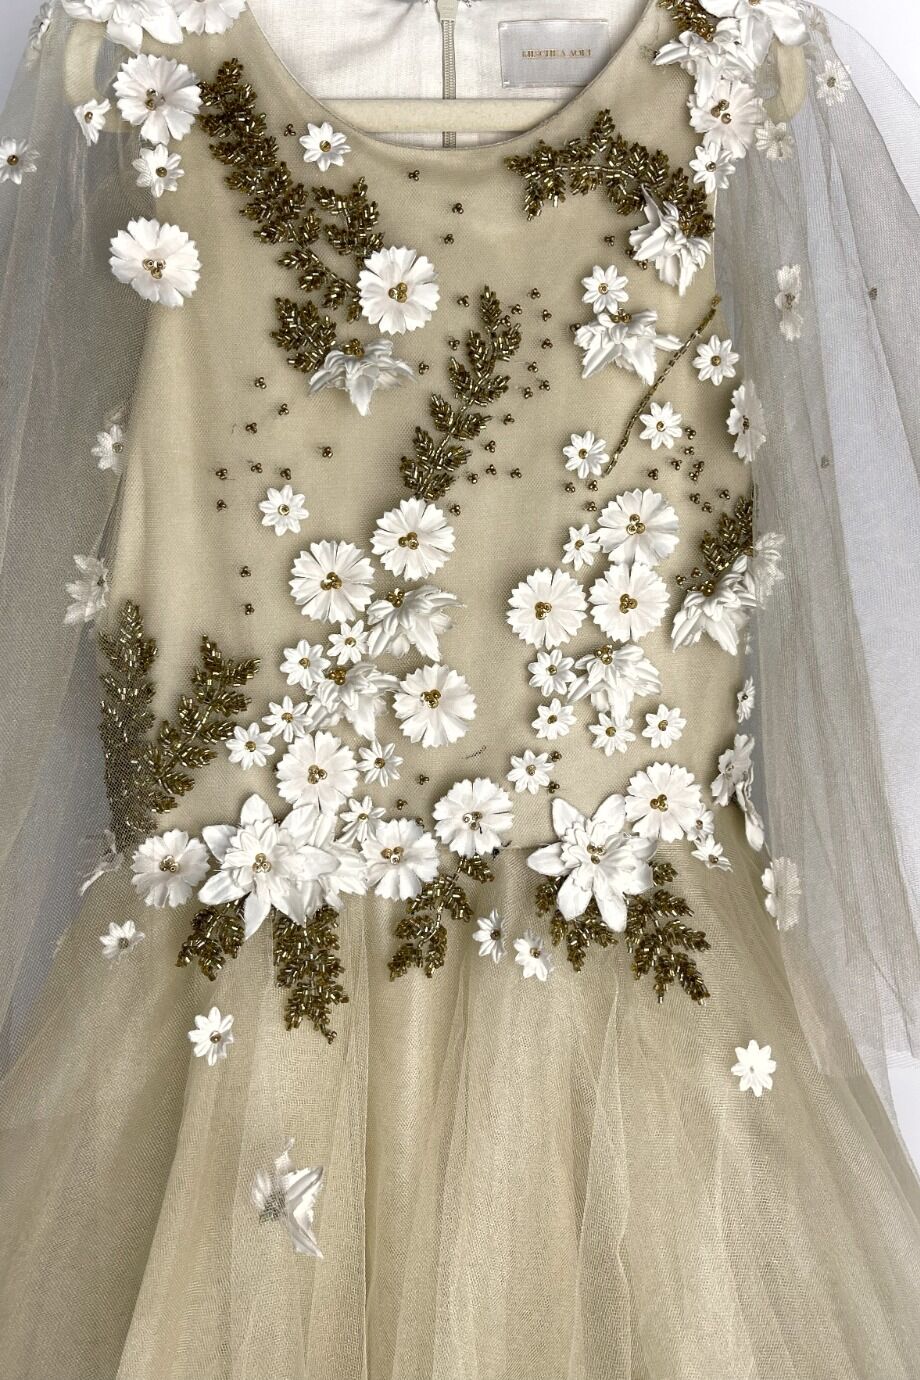 image 2 Детское платье в пол из сетки бежевого цвета расшитое цветами